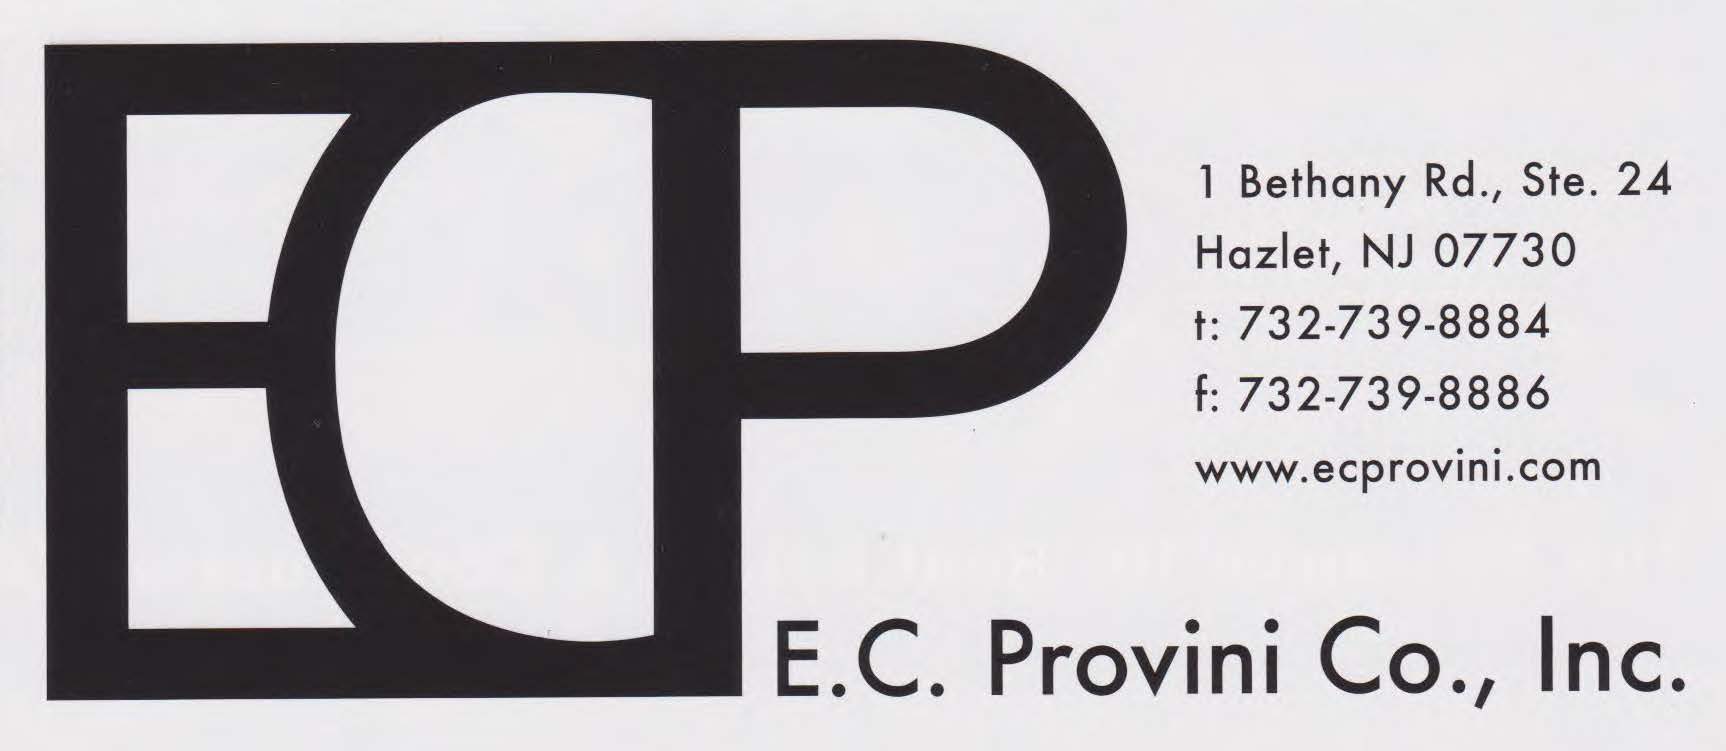 E.C. Provini Company, Inc. 